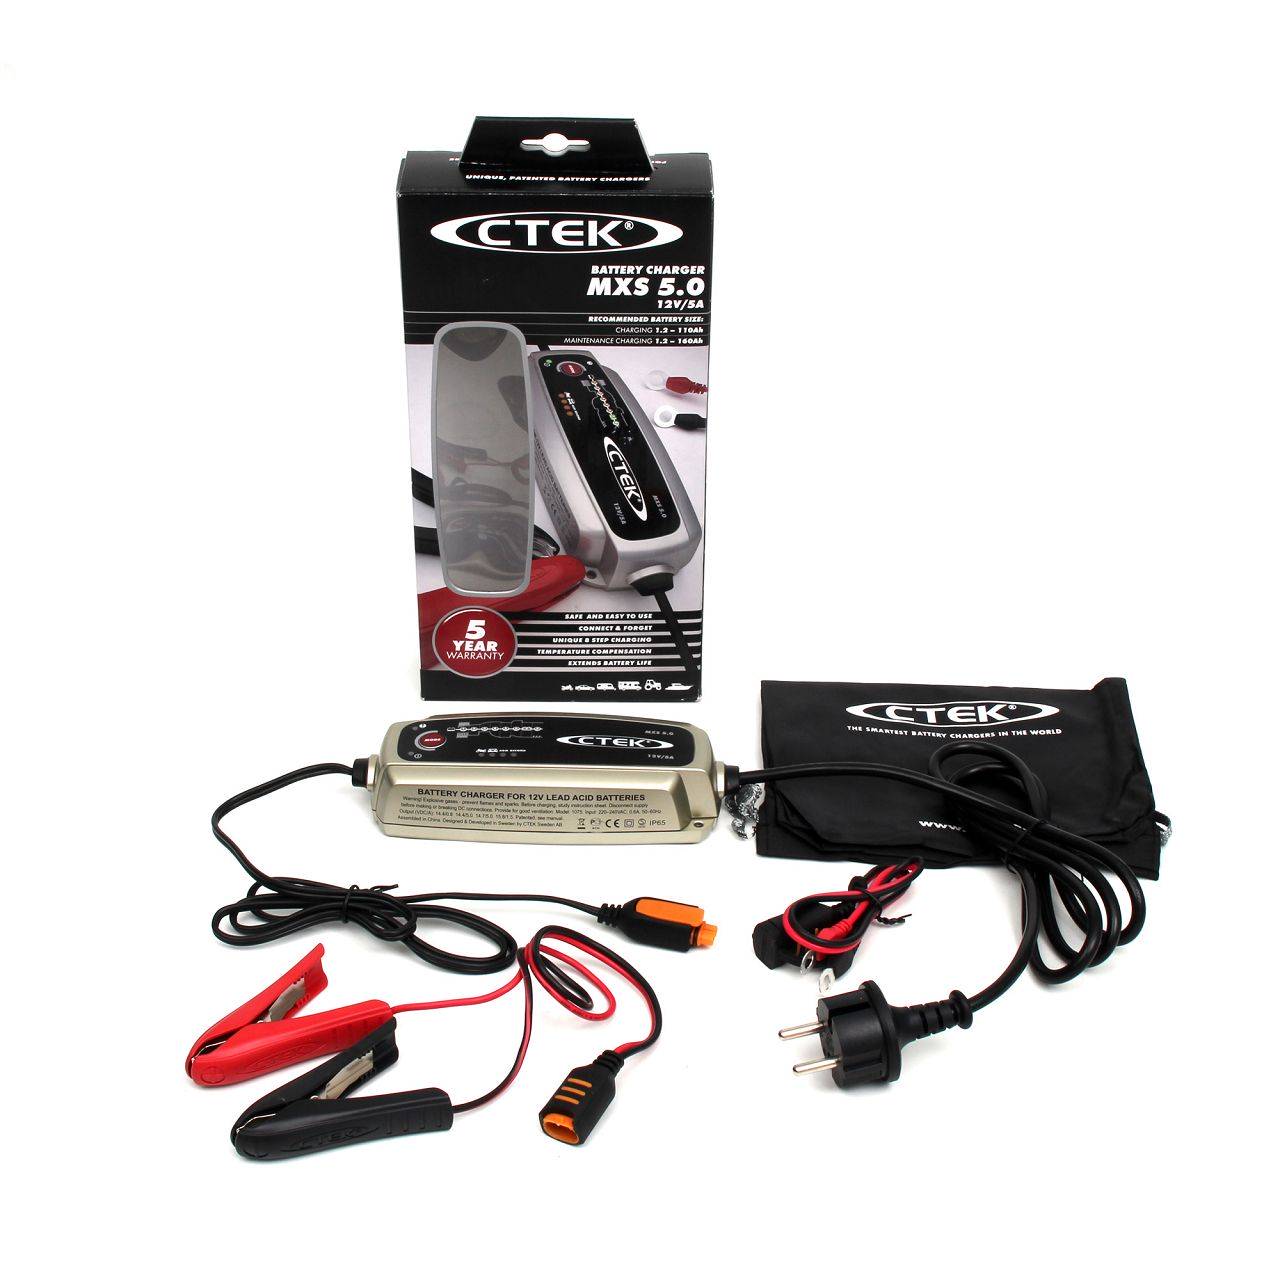 Chargeur de Batteries Ctek MXS 5.0 (12V, 5A) Version CH